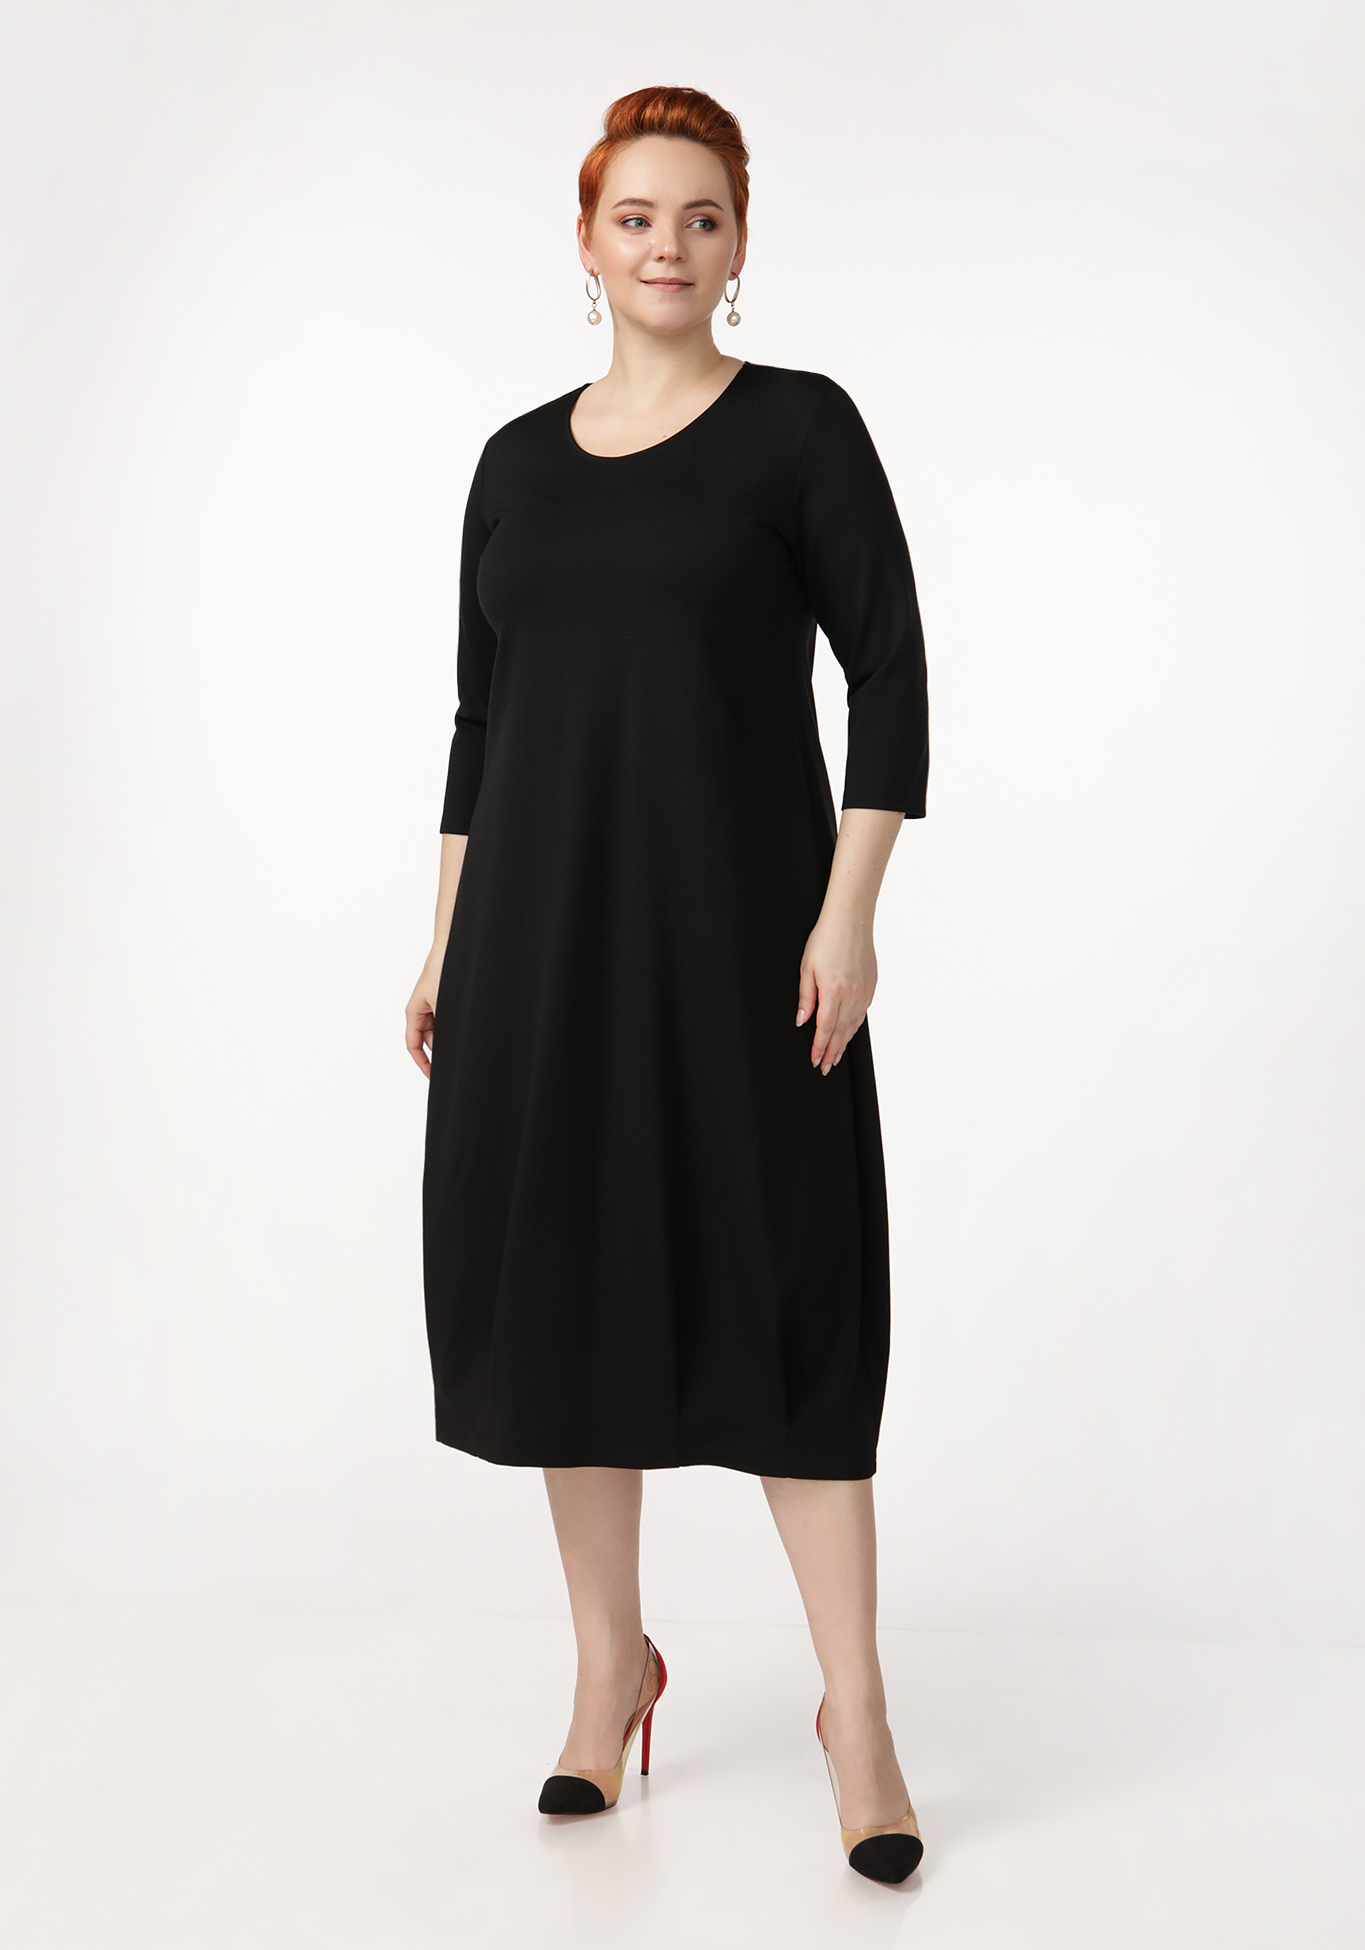 Платье «Комфортное времяпрепровождение» ZORY, размер 62, цвет черный - фото 5